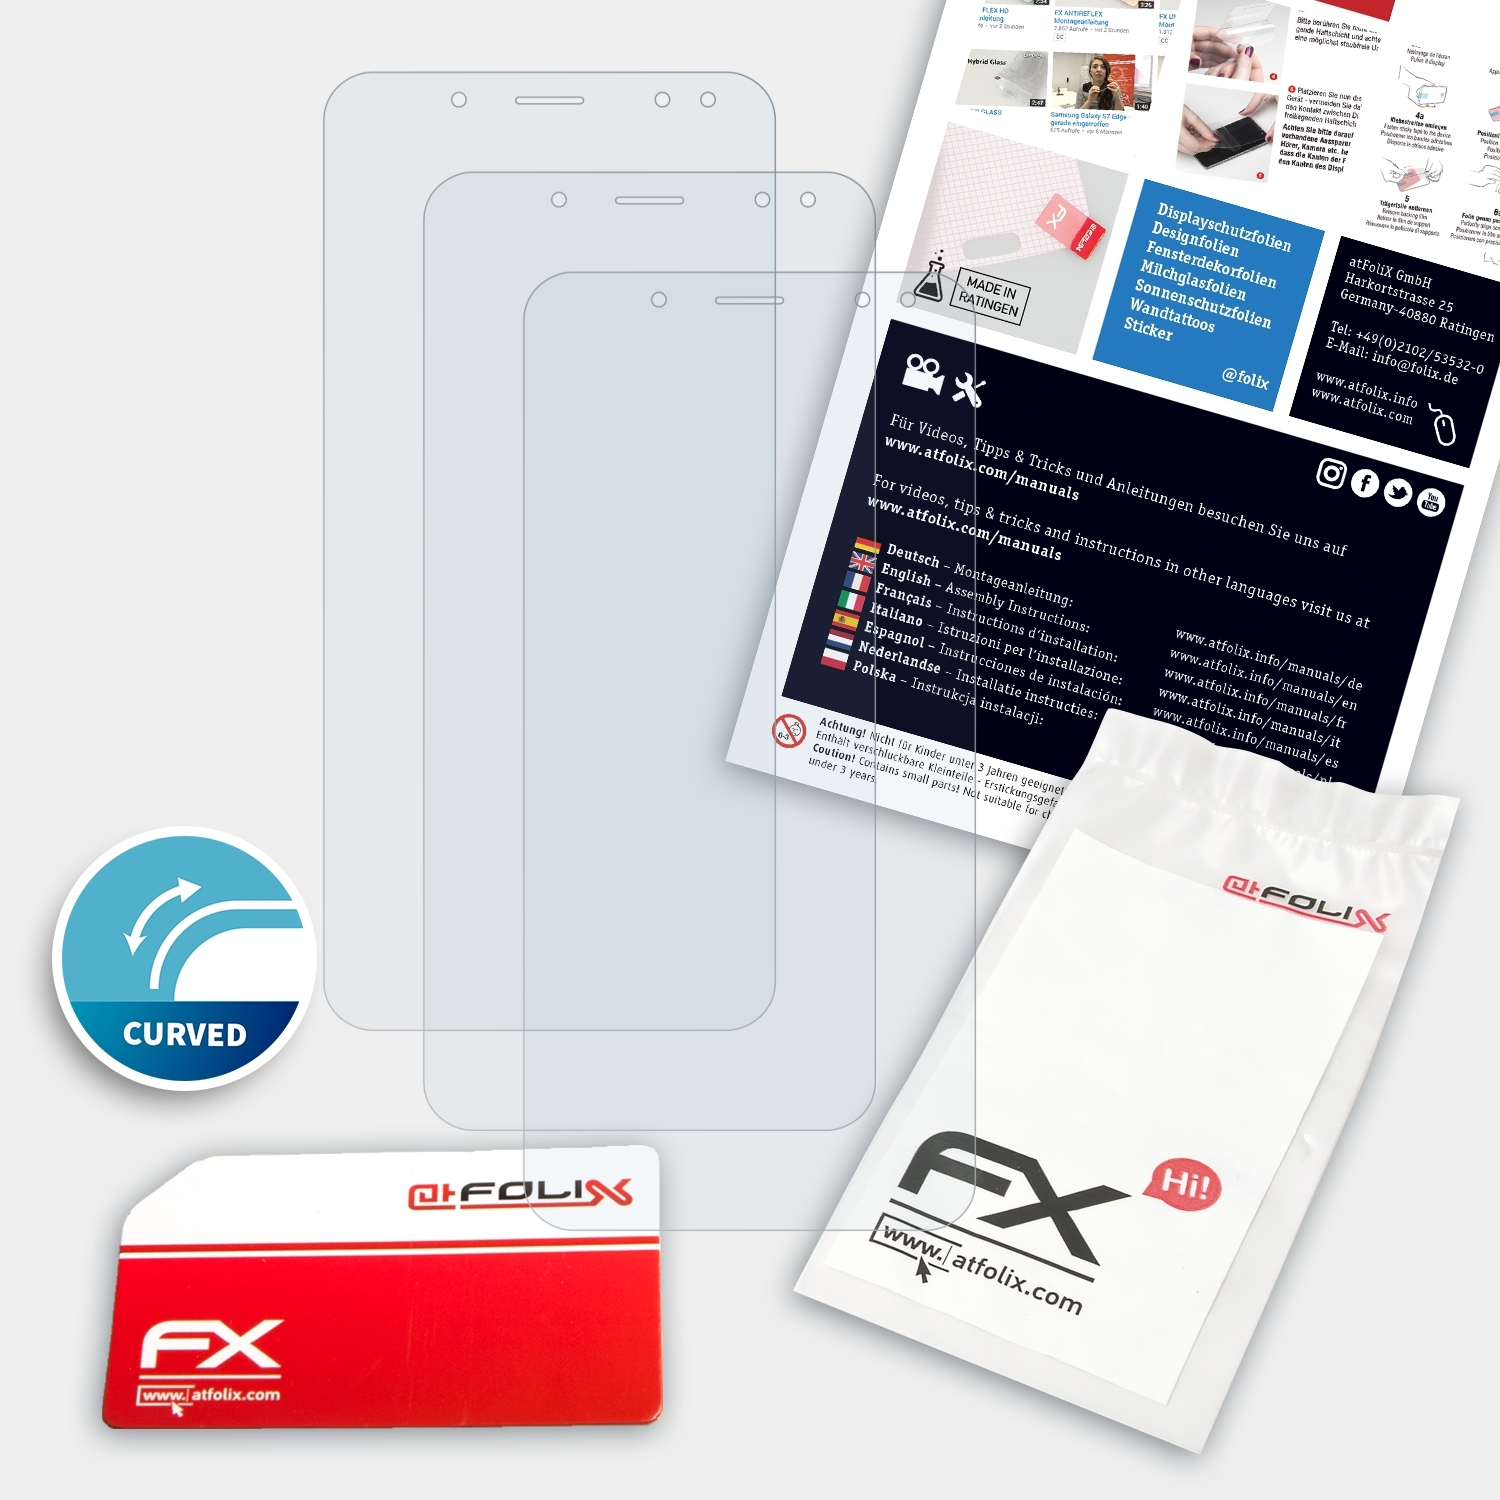 ATFOLIX 3x FX-ActiFleX Displayschutz(für Power 3) Ulefone